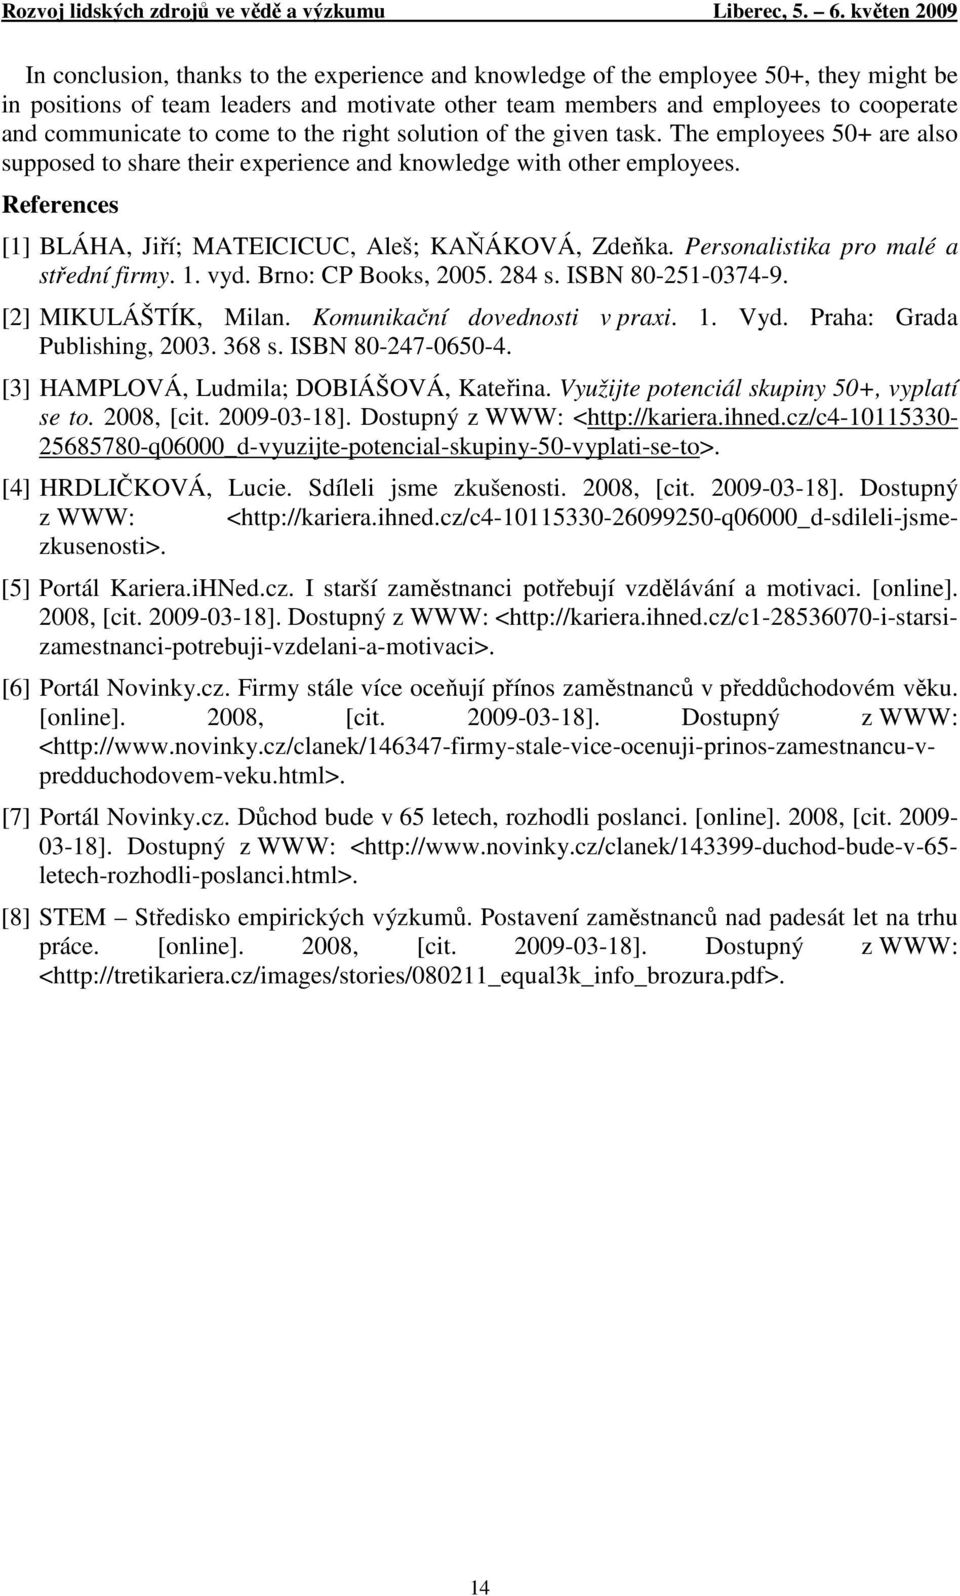 References [1] BLÁHA, Jiří; MATEICICUC, Aleš; KAŇÁKOVÁ, Zdeňka. Personalistika pro malé a střední firmy. 1. vyd. Brno: CP Books, 2005. 284 s. ISBN 80-251-0374-9. [2] MIKULÁŠTÍK, Milan.